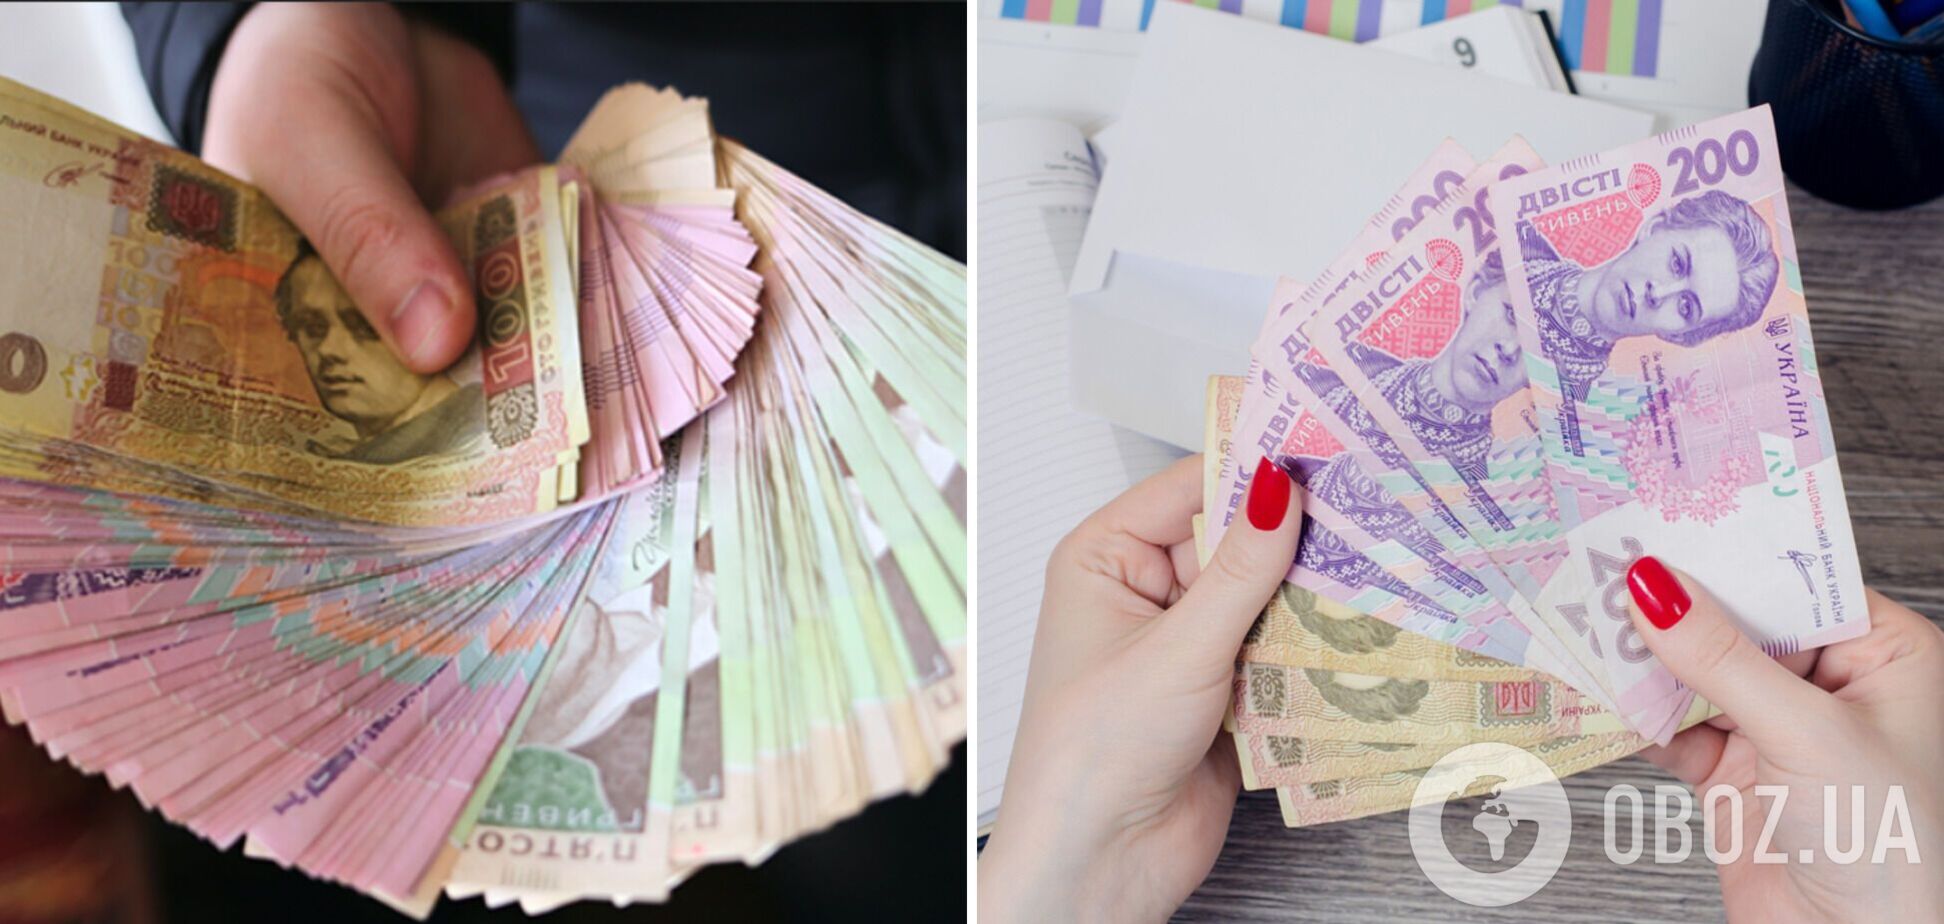 Украинцы уменьшили финансовые запросы почти в 2 раза